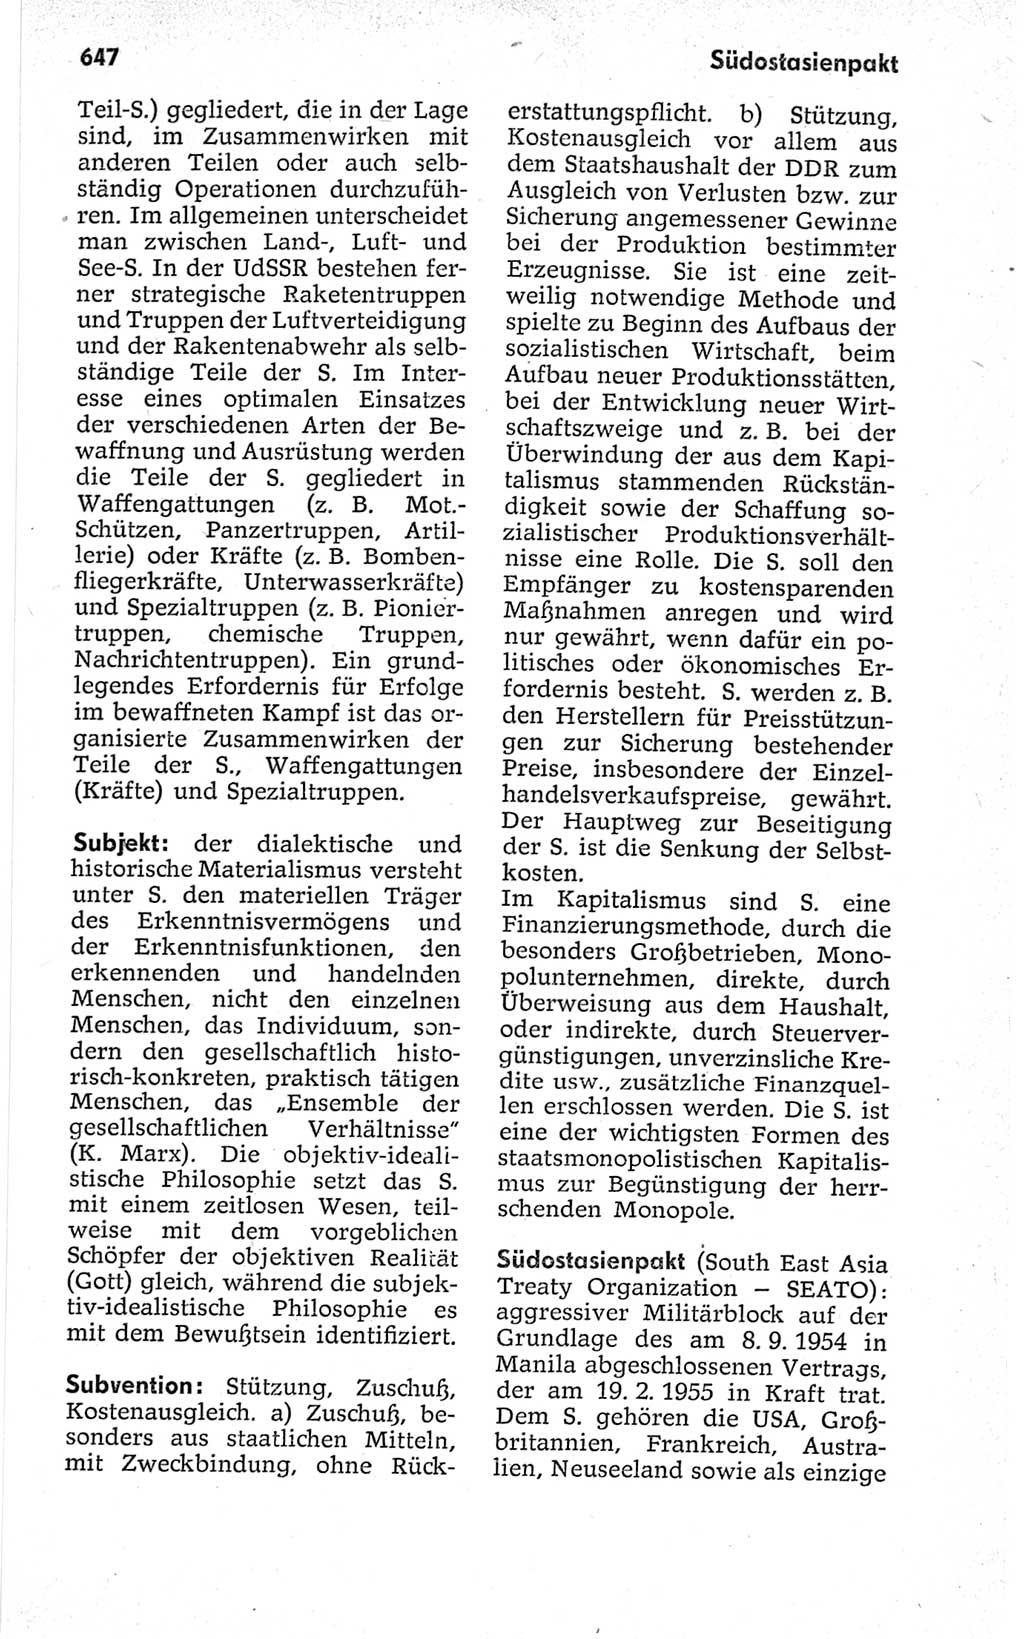 Kleines politisches Wörterbuch [Deutsche Demokratische Republik (DDR)] 1967, Seite 647 (Kl. pol. Wb. DDR 1967, S. 647)